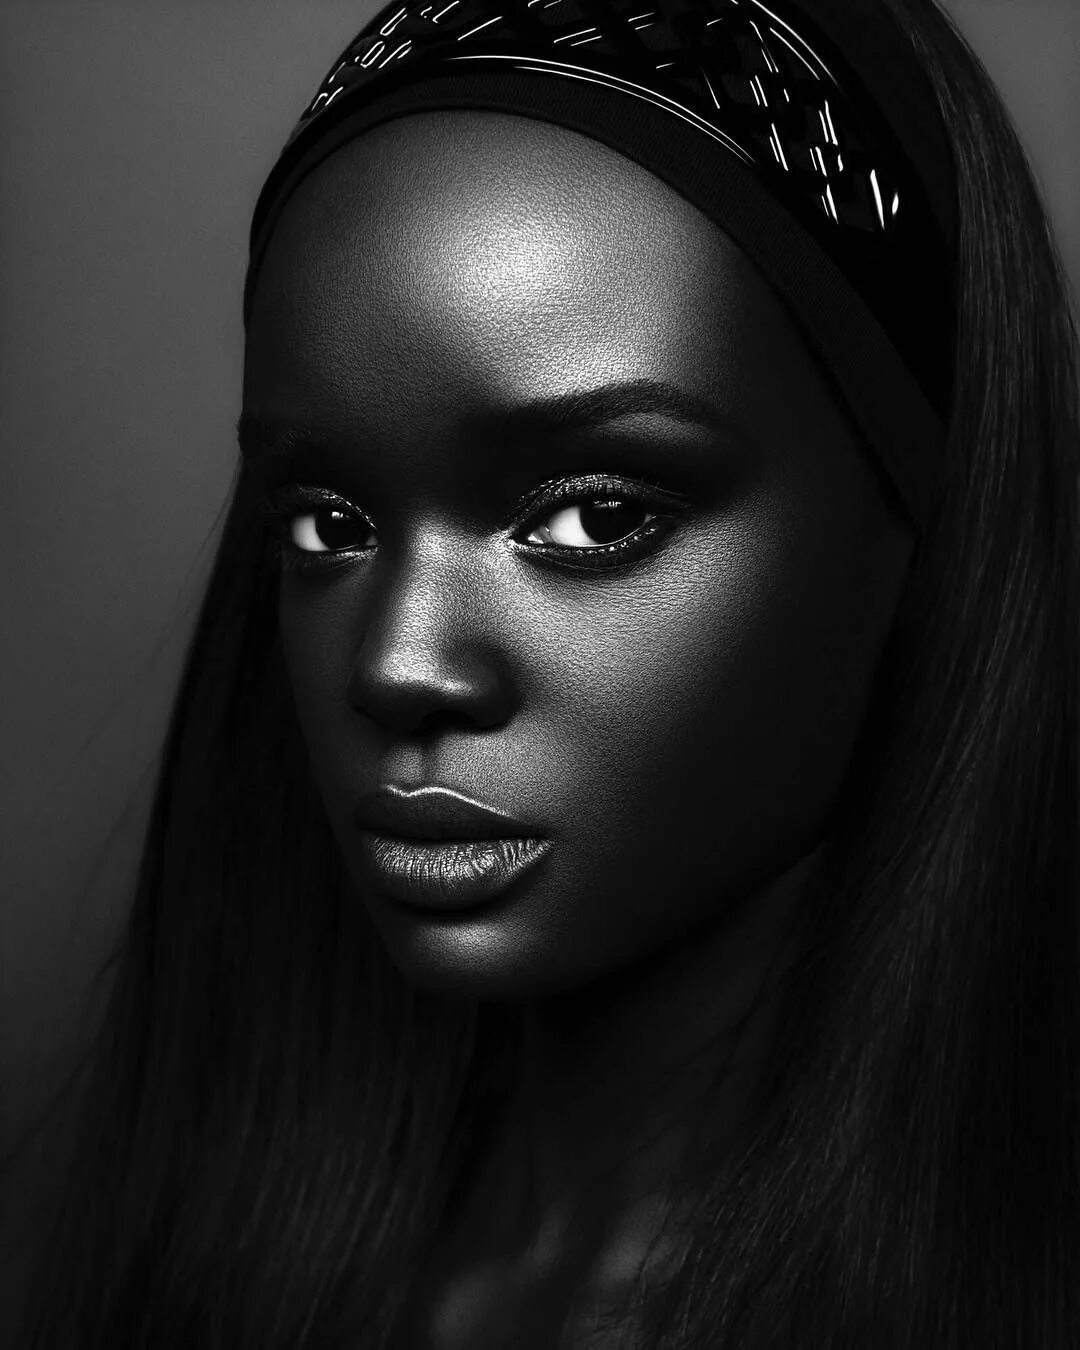 Модель даки тот (Duckie thot) из Южного Судана. Брук Бейли темнокожая модель. Пегги Даниэль темнокожая модель. Темная негритянка